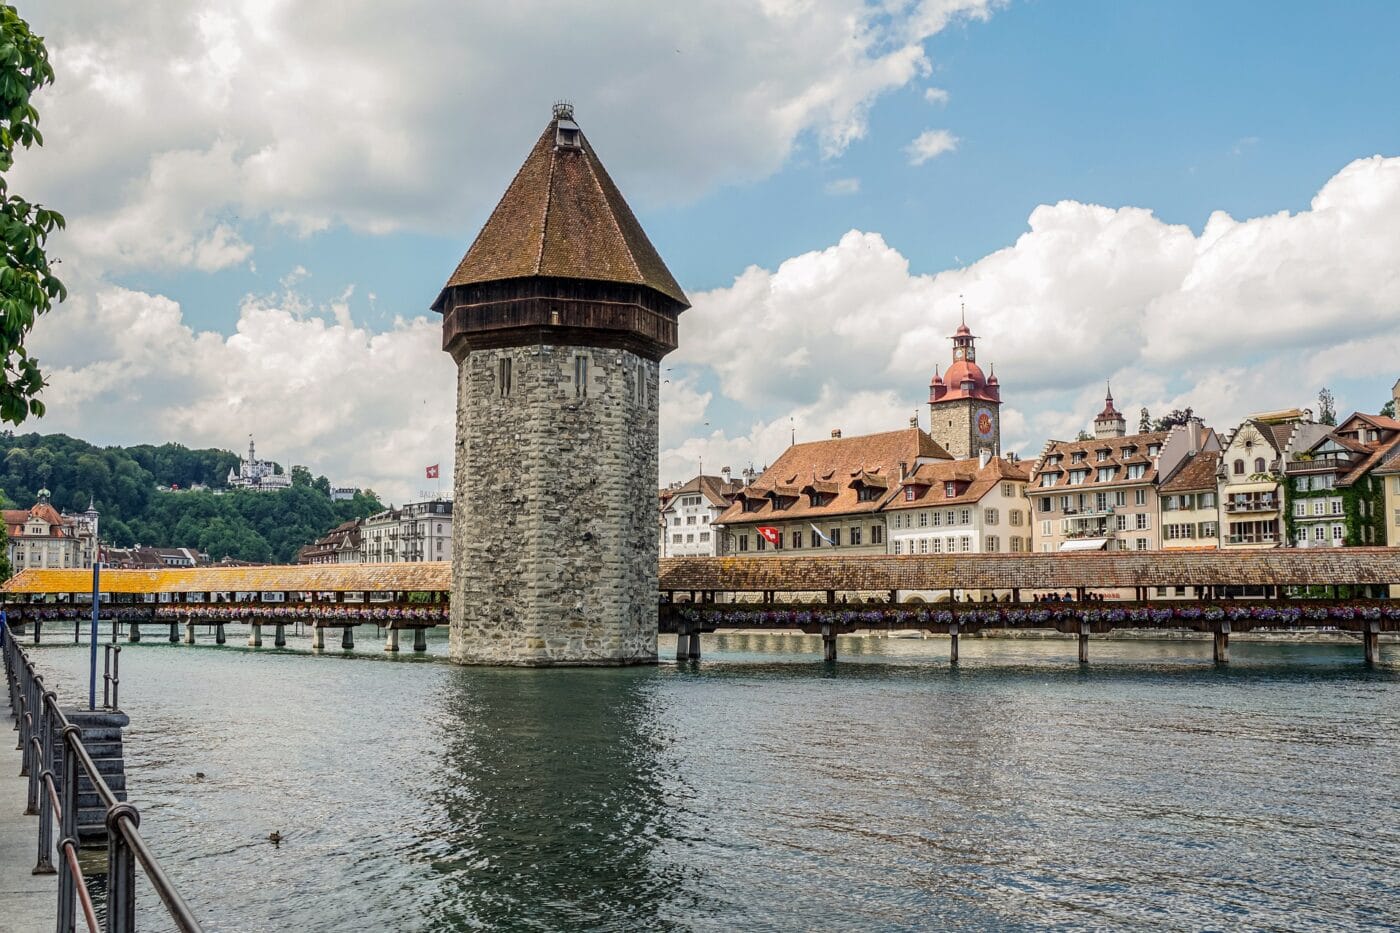 Trotz Coronakrise: Luzern plant grosse Investitionen! Kann sich der Kanton das leisten?